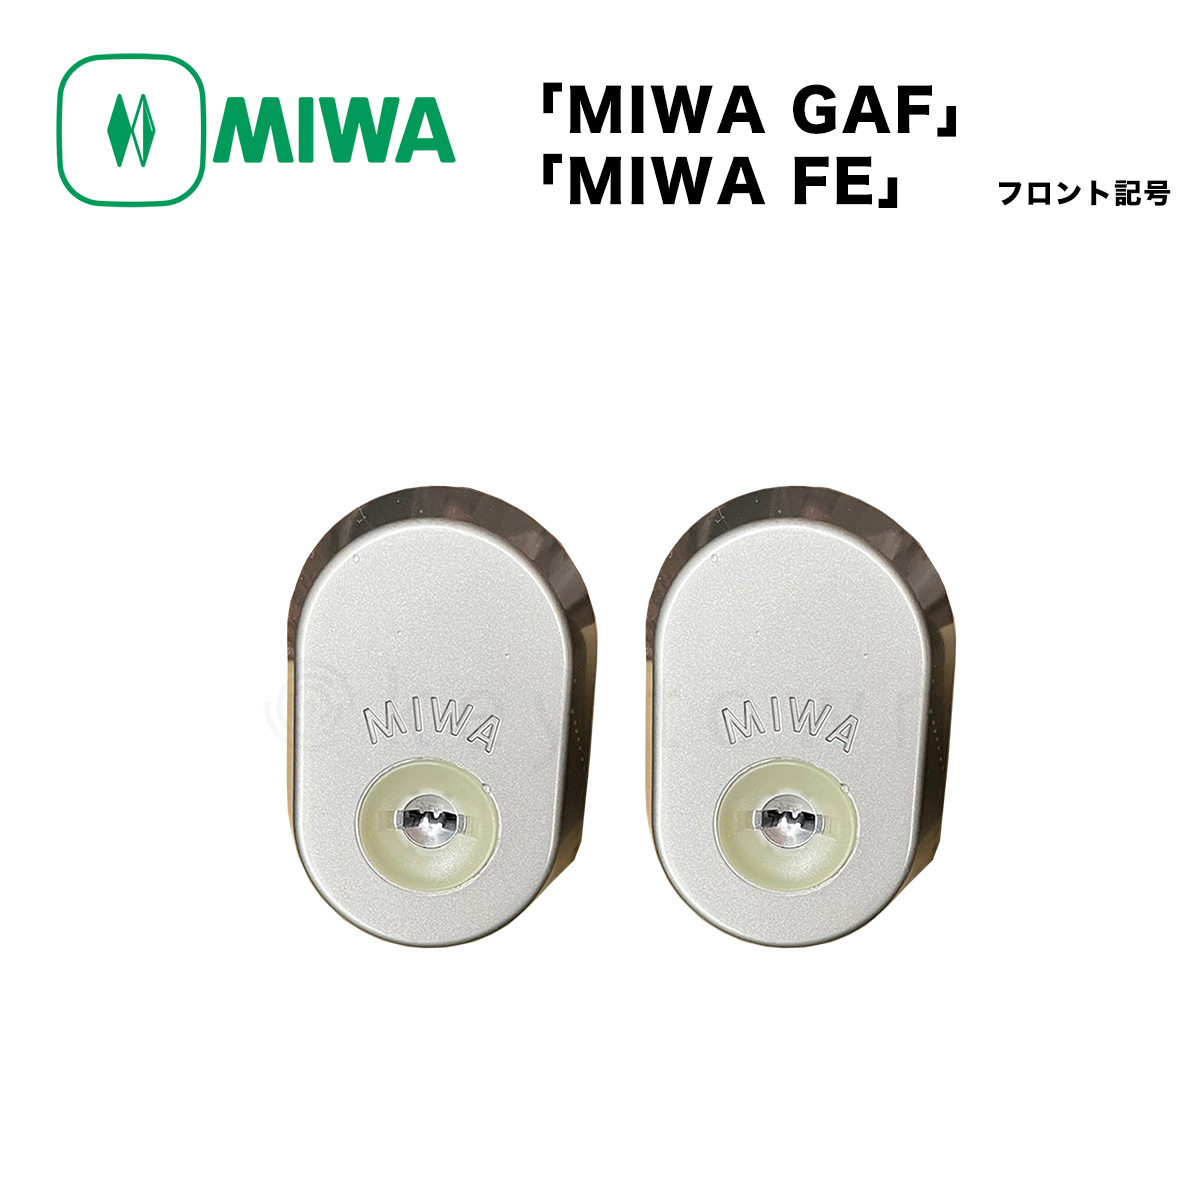 MIWA 美和ロック 取替シリンダー [GAF FE] - 金物、部品